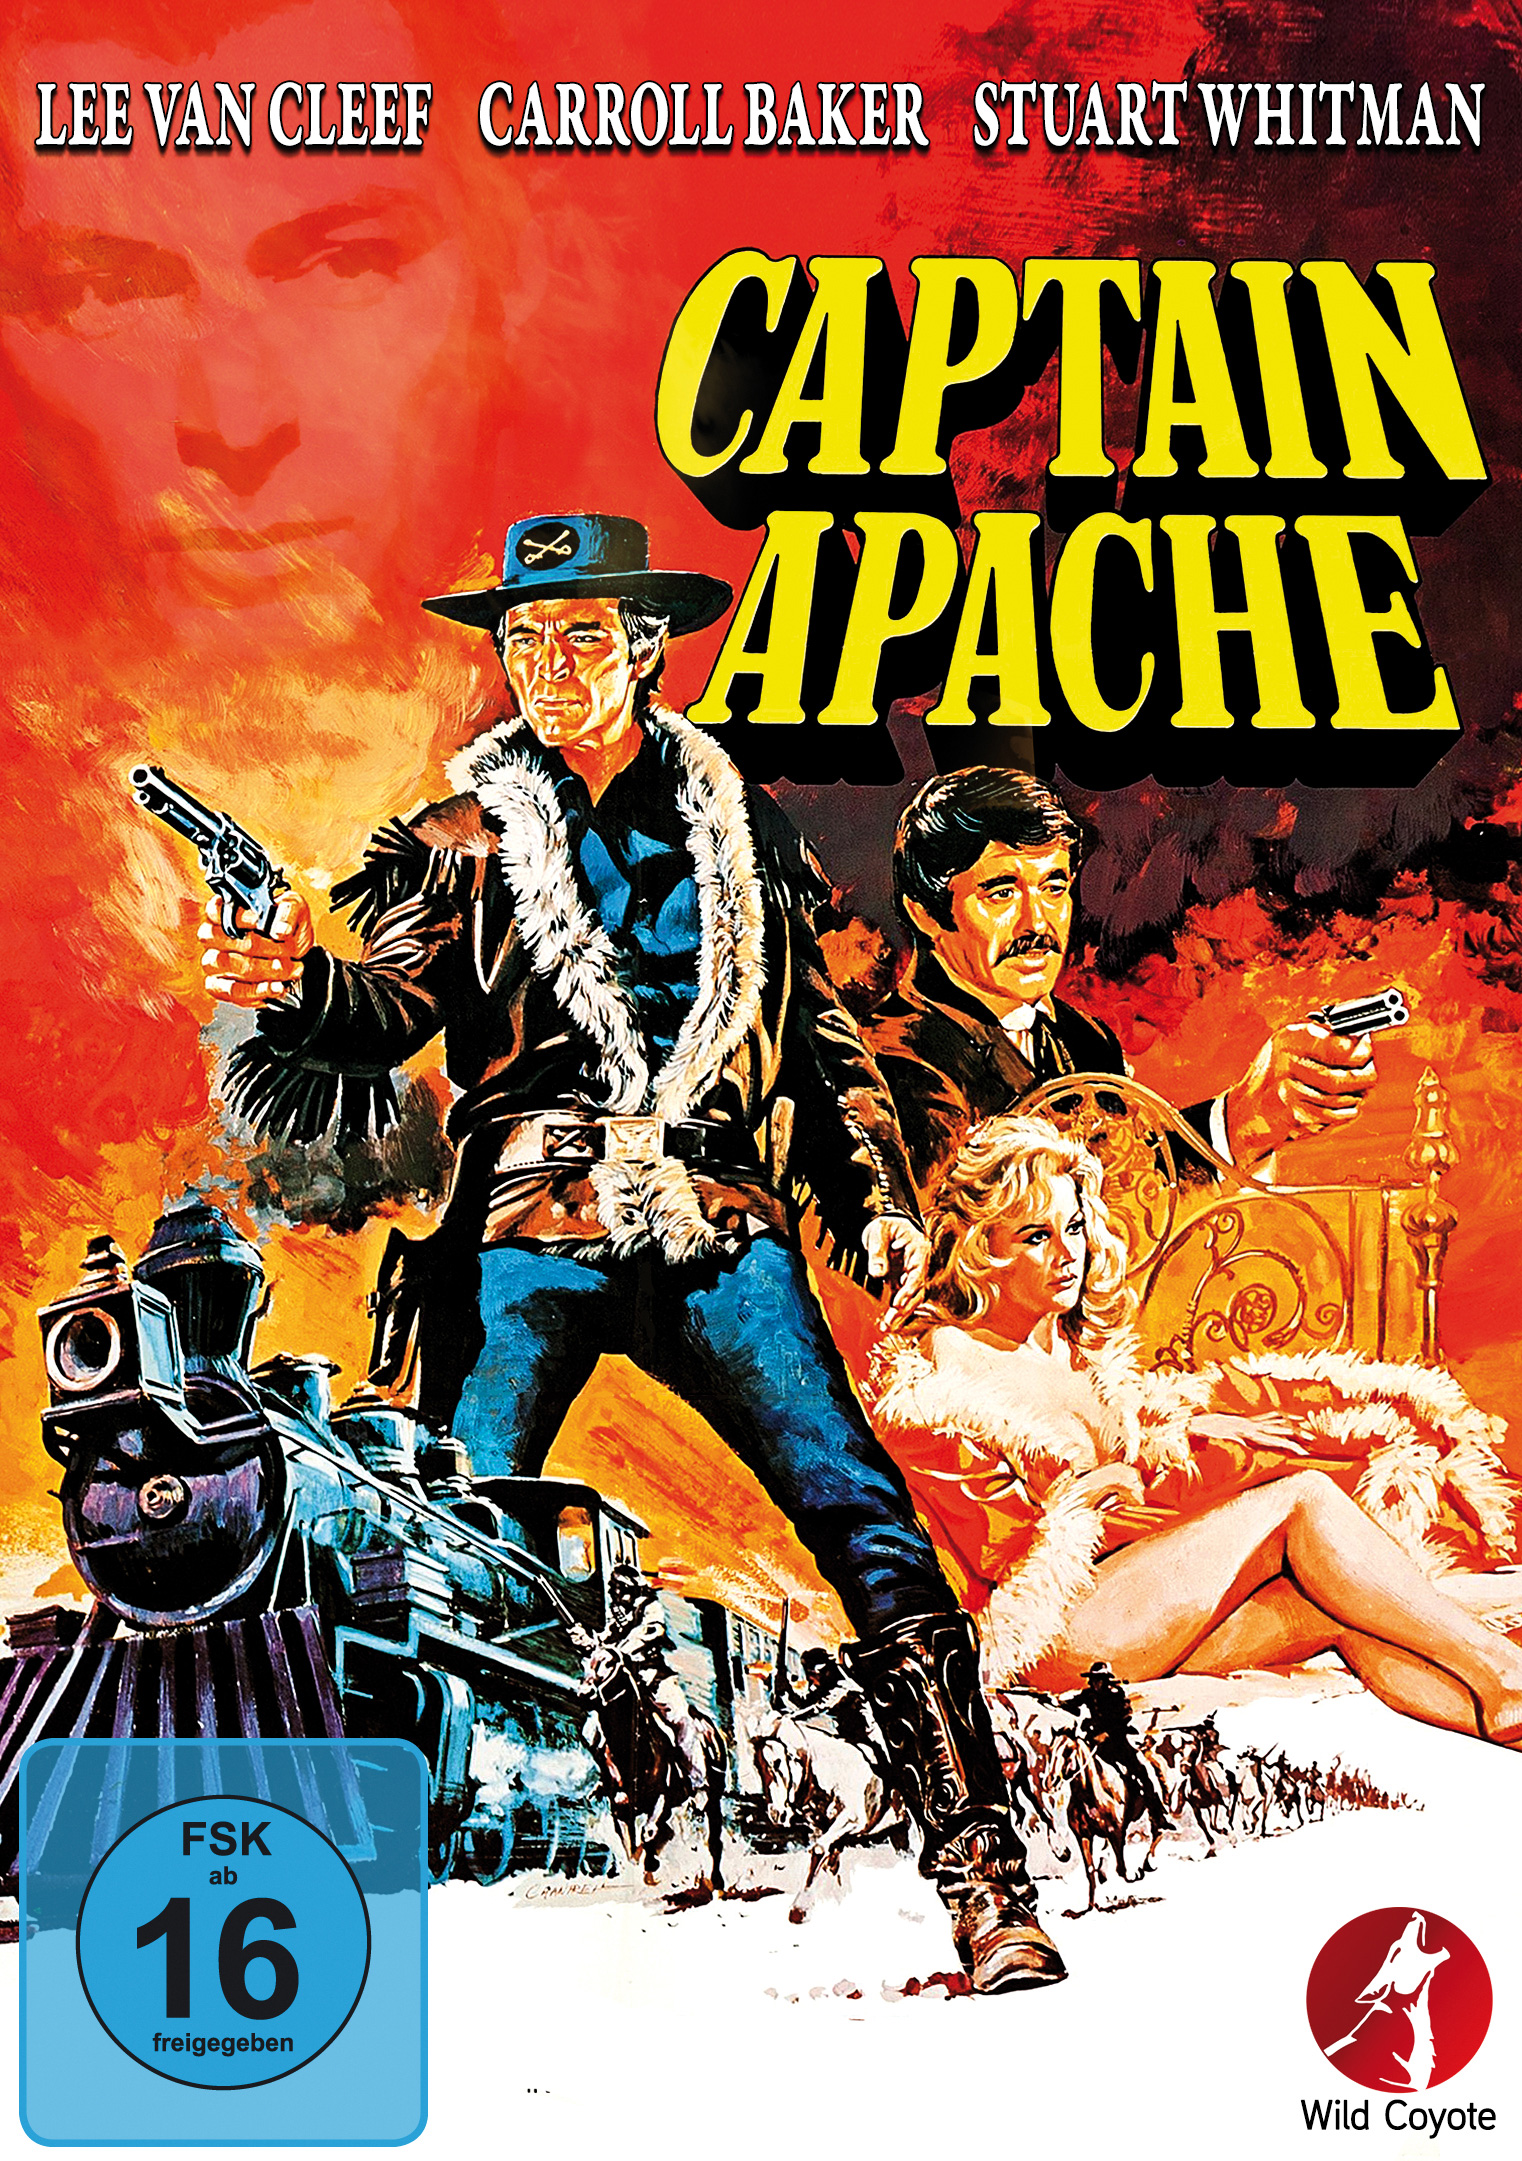 Captain Apache